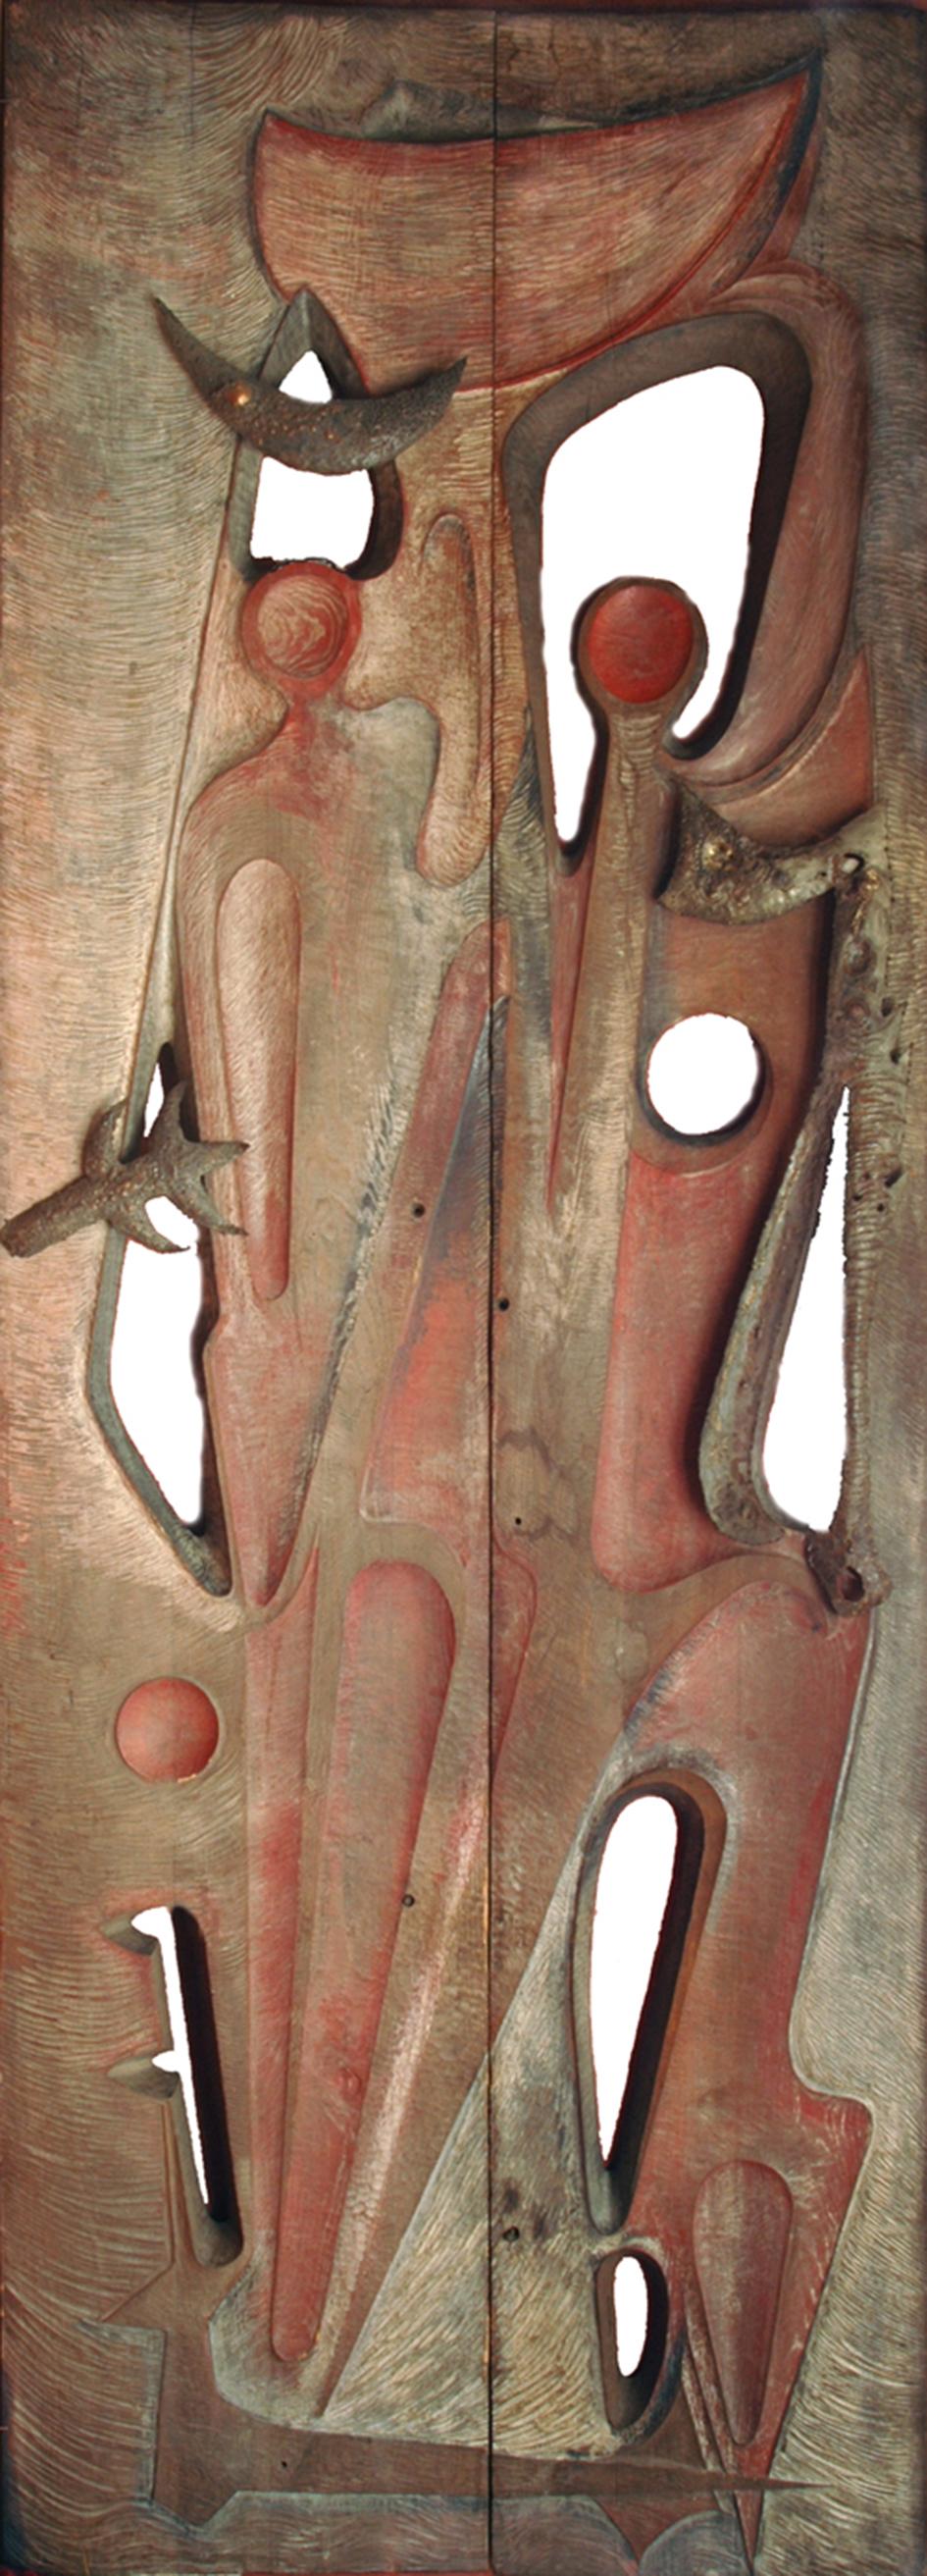 Gilbert de Smet. Née en 1932 à Erembodegem en Belgique
Porte monumentale sculptée, 1969. Chêne sculpté et pièces métalliques
Ces portes ont été exposées en 1969 au Casino de Blanckenberge, avec quinze autres sculptures et quarante dessins. Ses